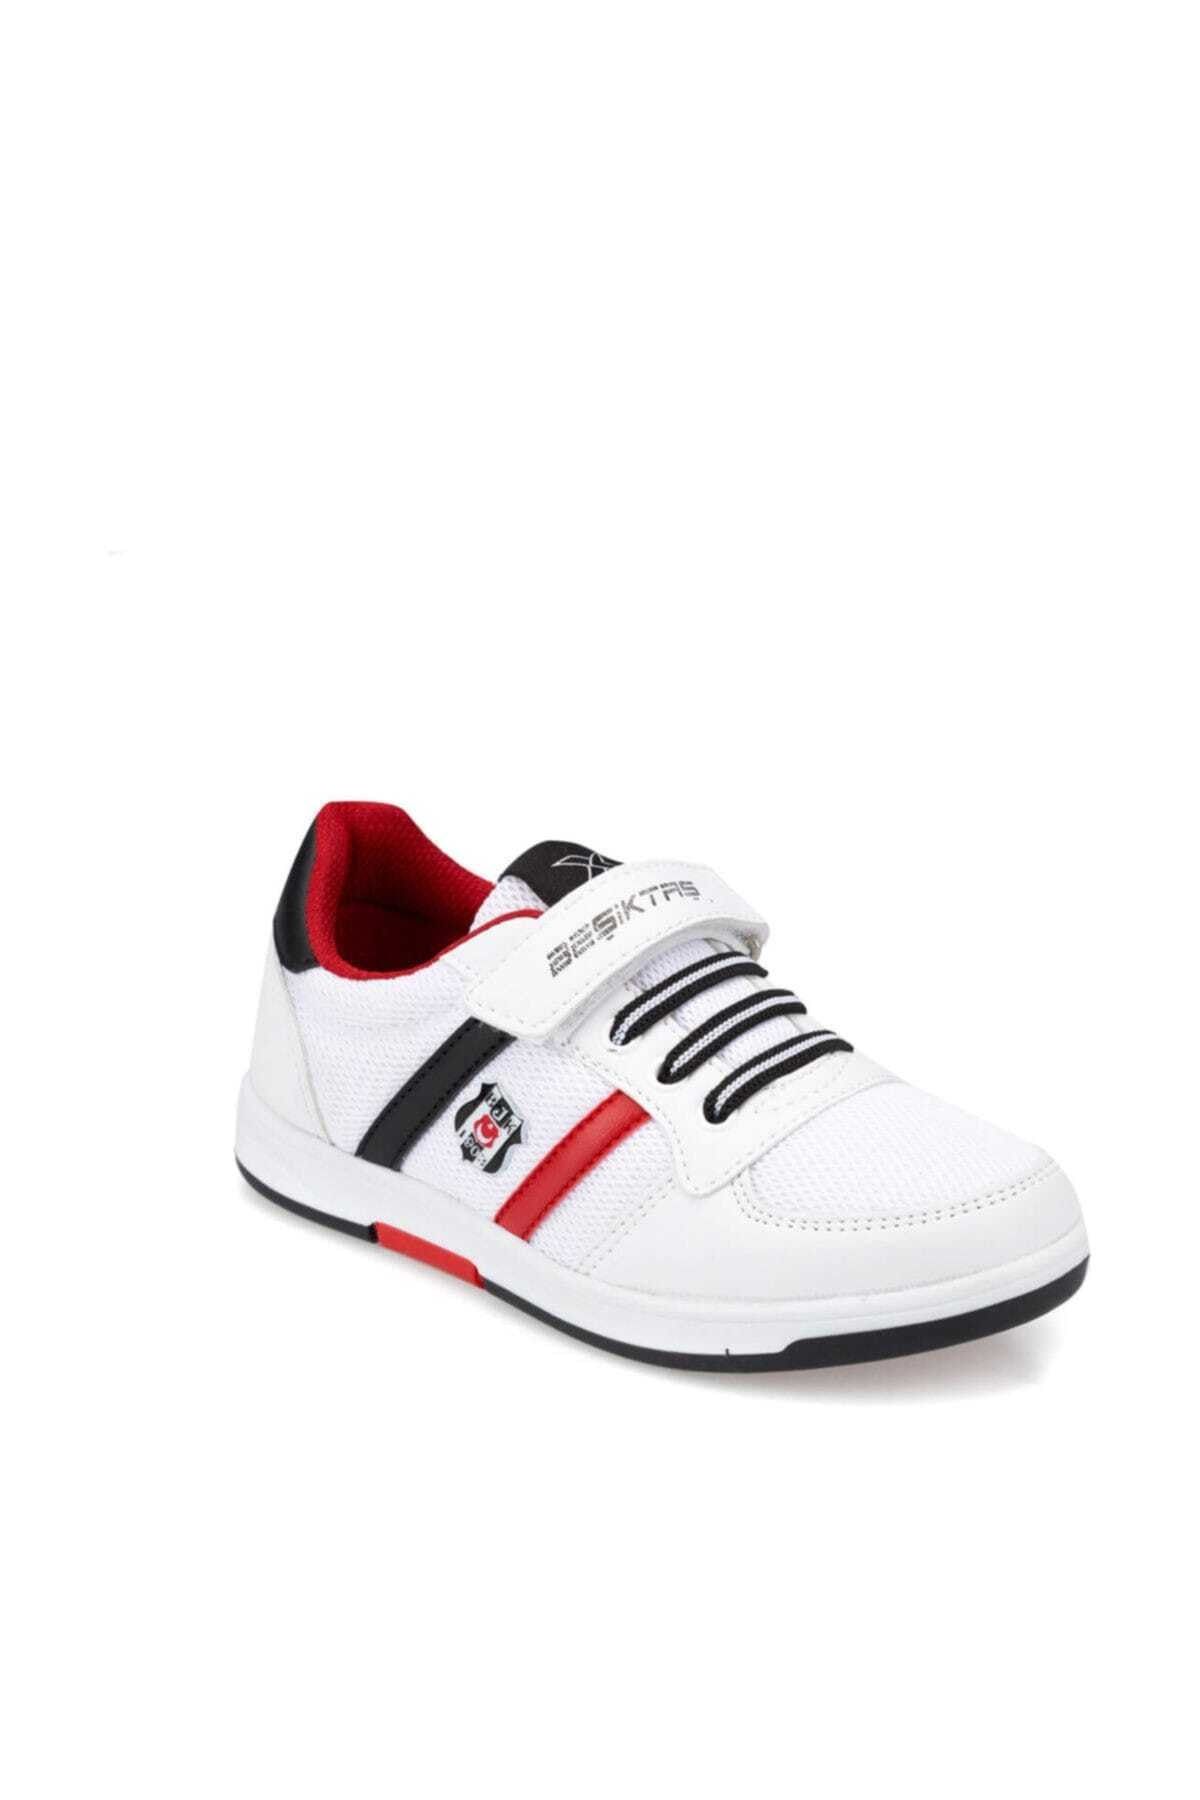 Beşiktaş UPTON J BJK Beyaz Siyah Kırmızı Erkek Çocuk Sneaker 100314963